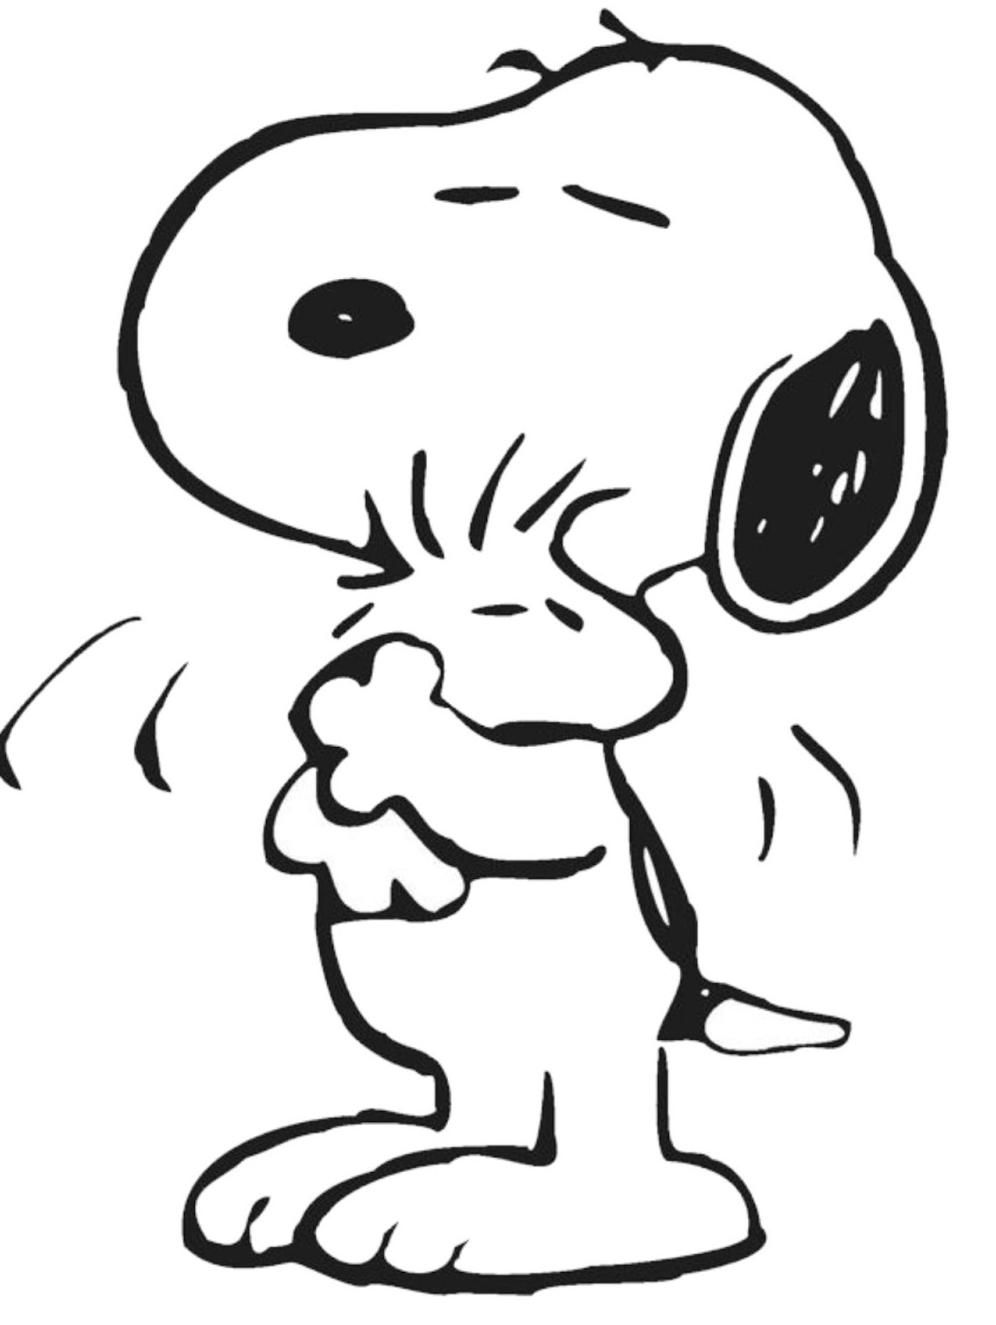 Image - Hugging love - Peanuts Wiki - Wikia